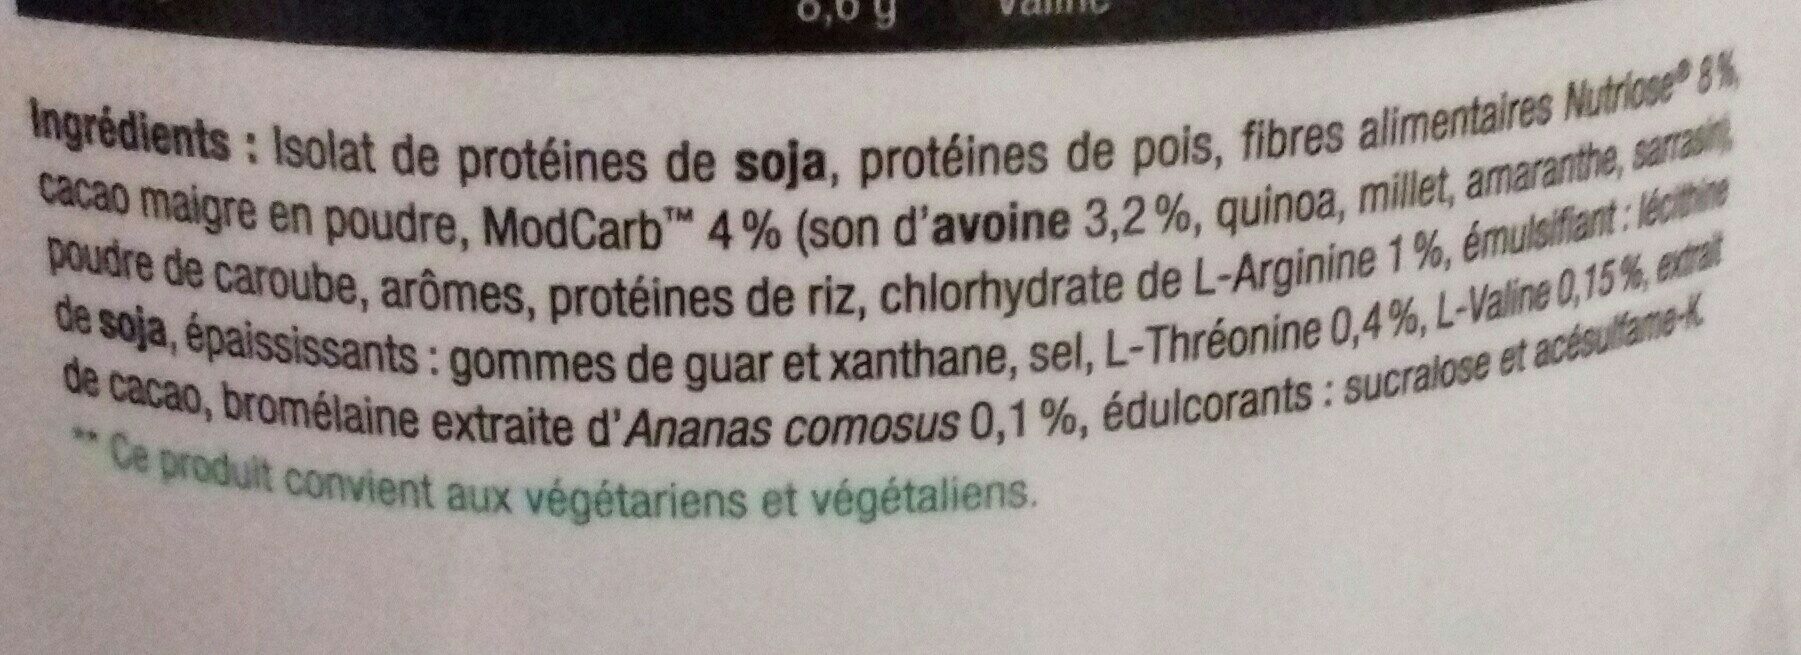 Vege protein - Ingredienti - fr